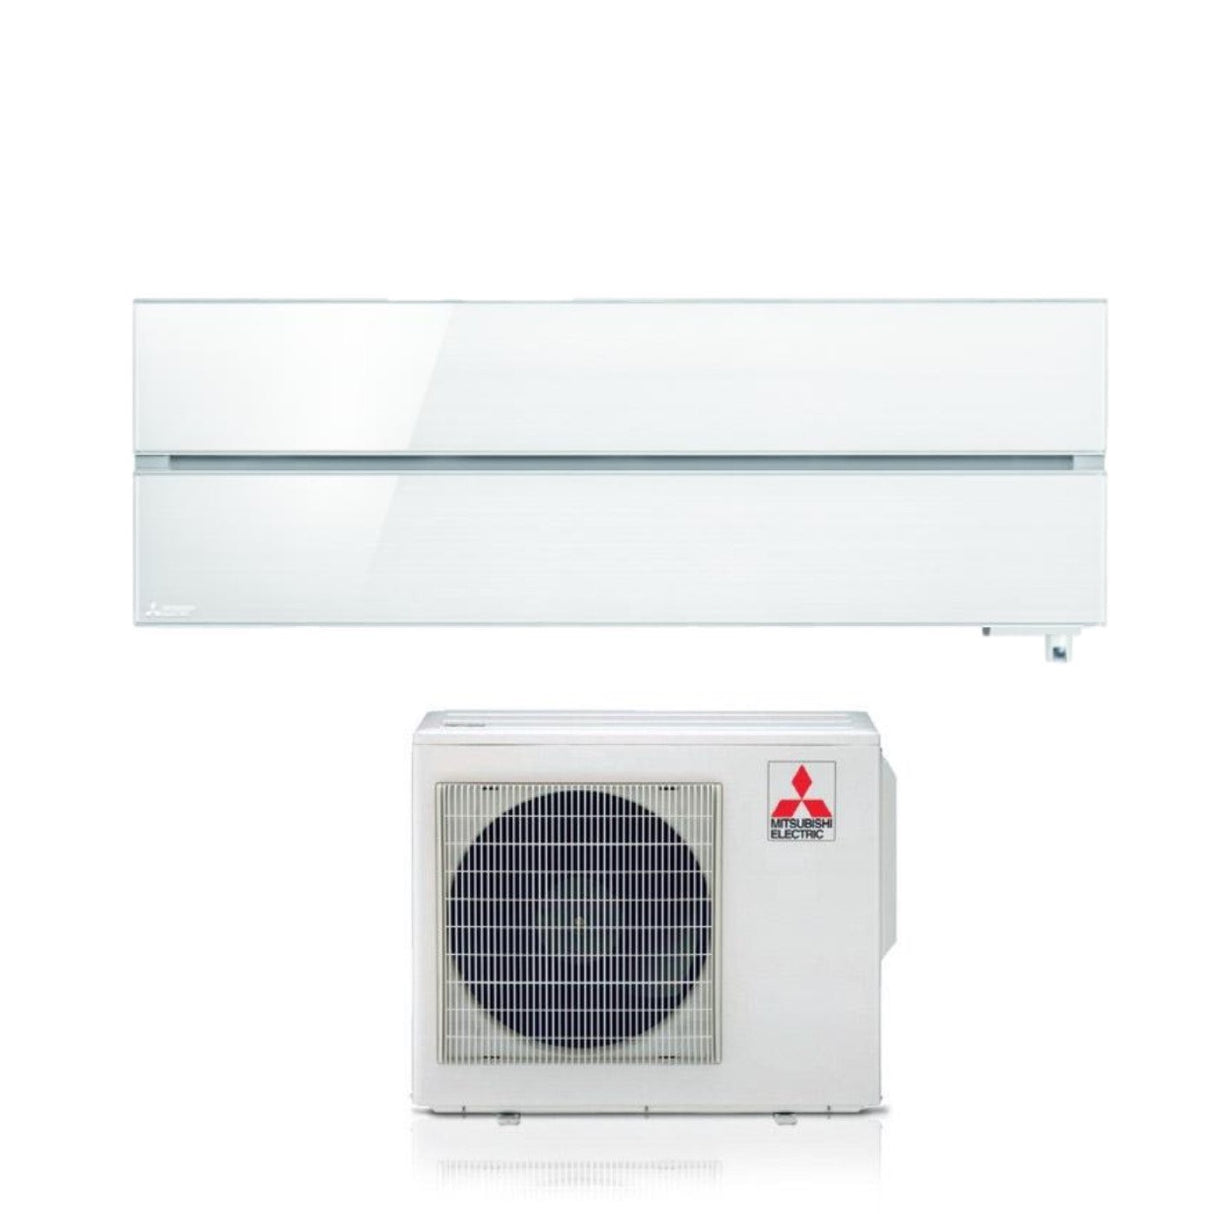 immagine-1-mitsubishi-electric-climatizzatore-condizionatore-mitsubishi-electric-inverter-serie-kirigamine-style-12000-btu-msz-ln35vgw-white-r-32-wi-fi-integrato-bianco-solido-ean-8059657000156